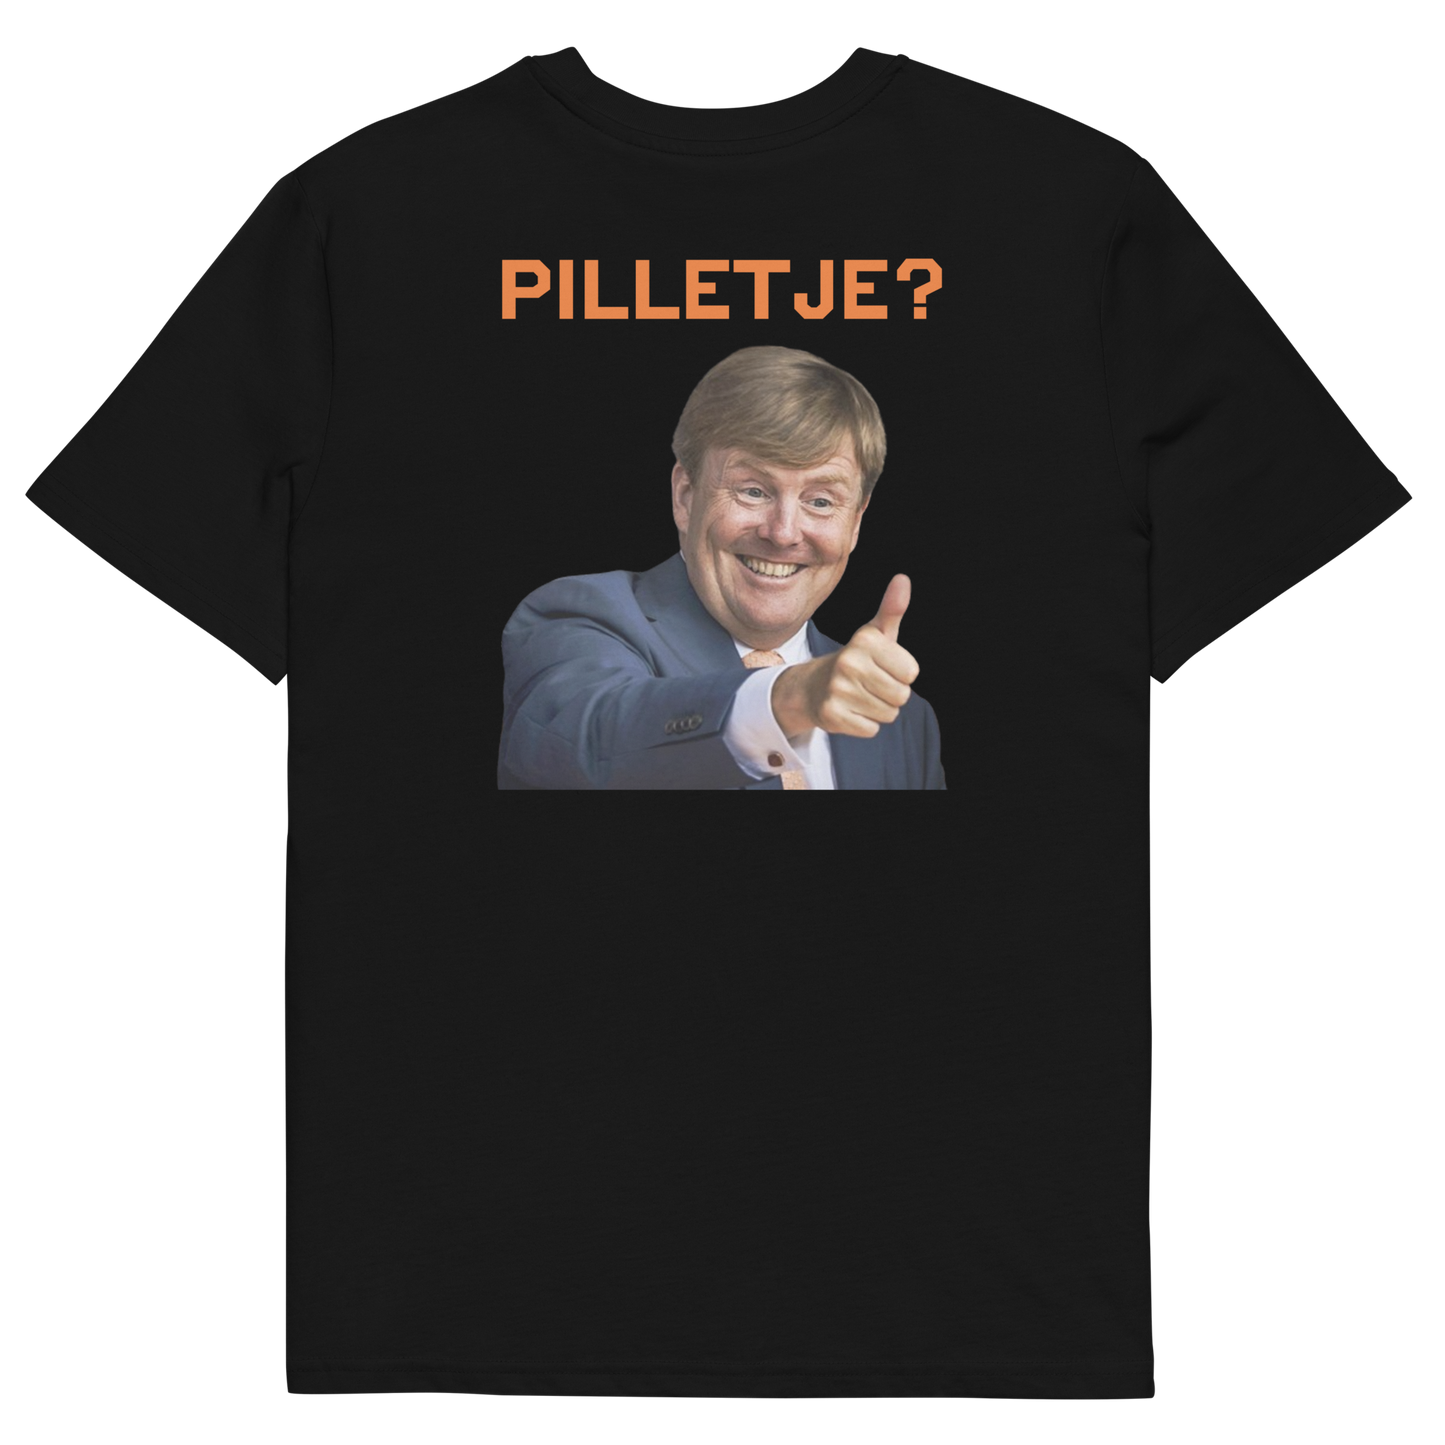 Pilletje? - T-shirt